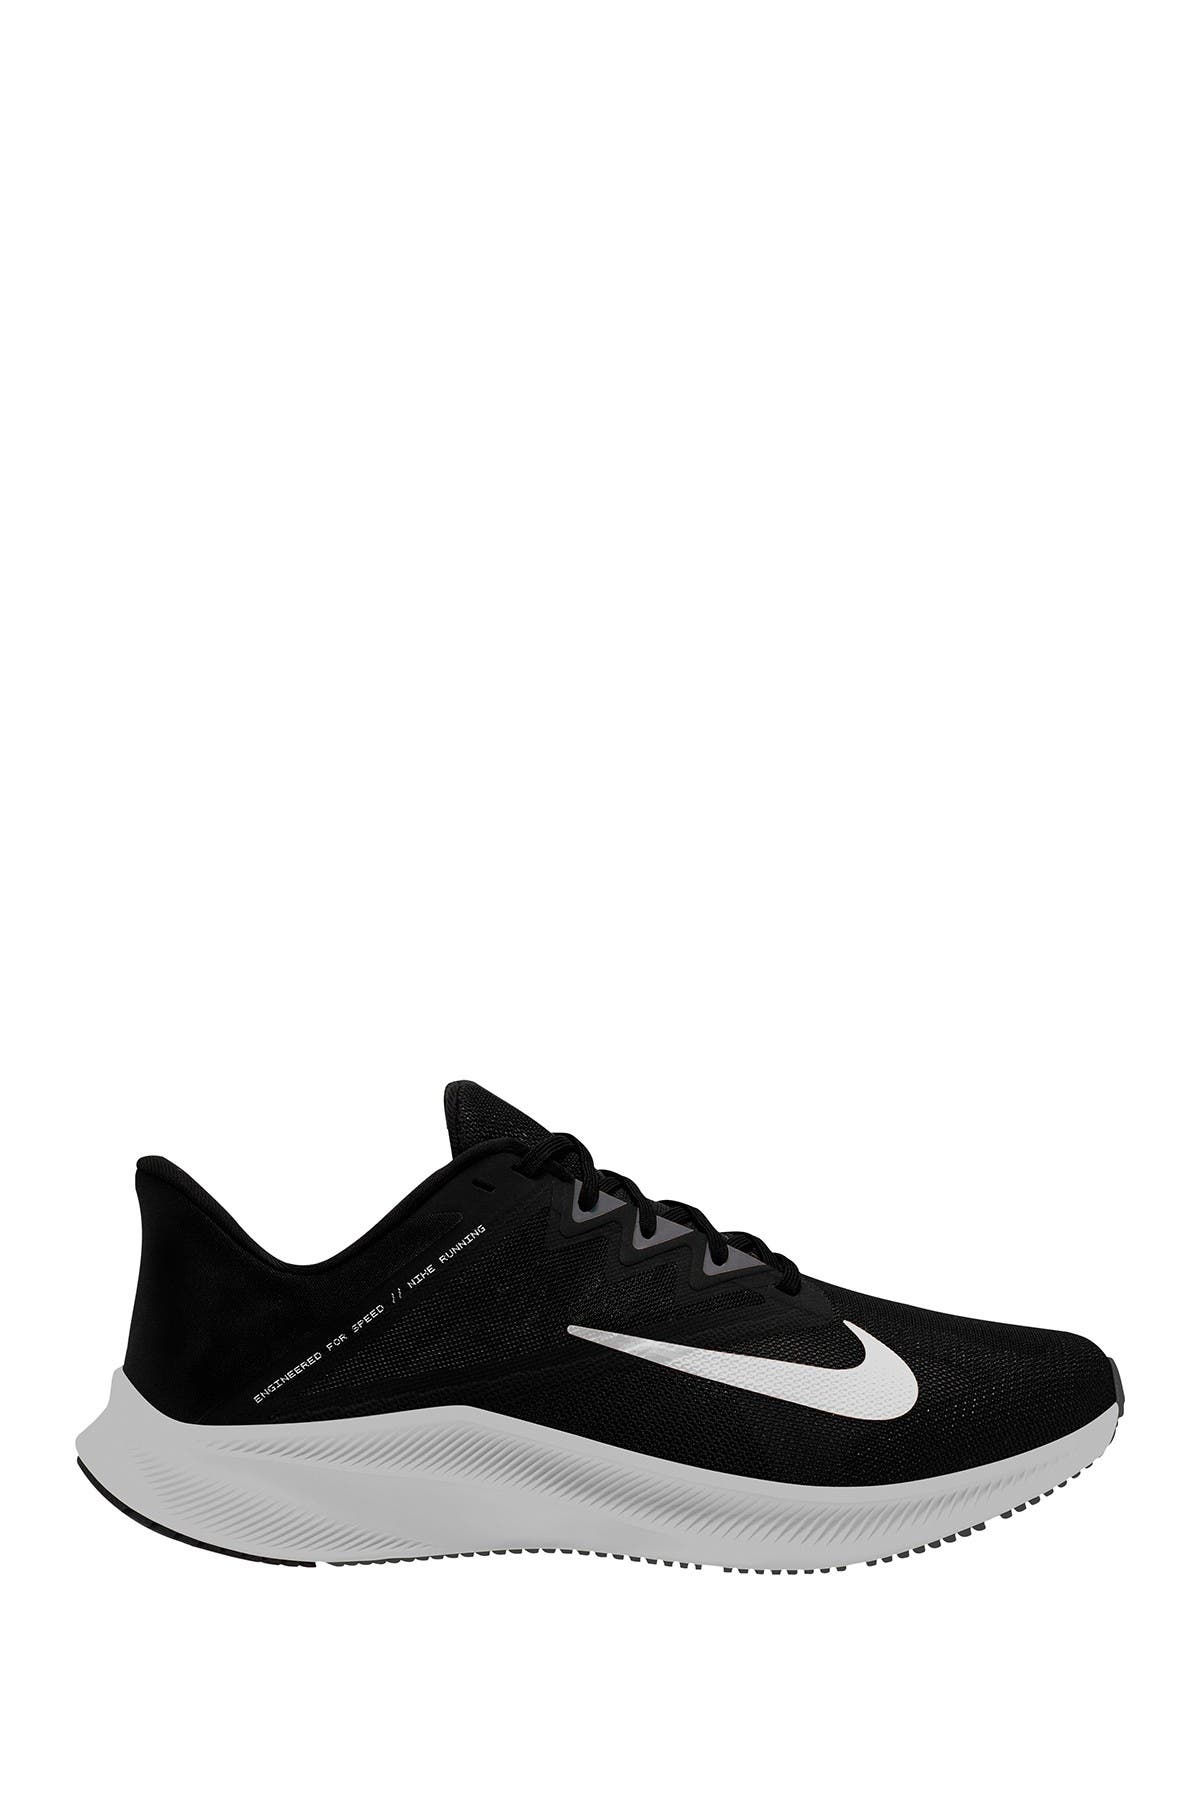 Nike | Quest 3 Men's Running Shoe (4E 